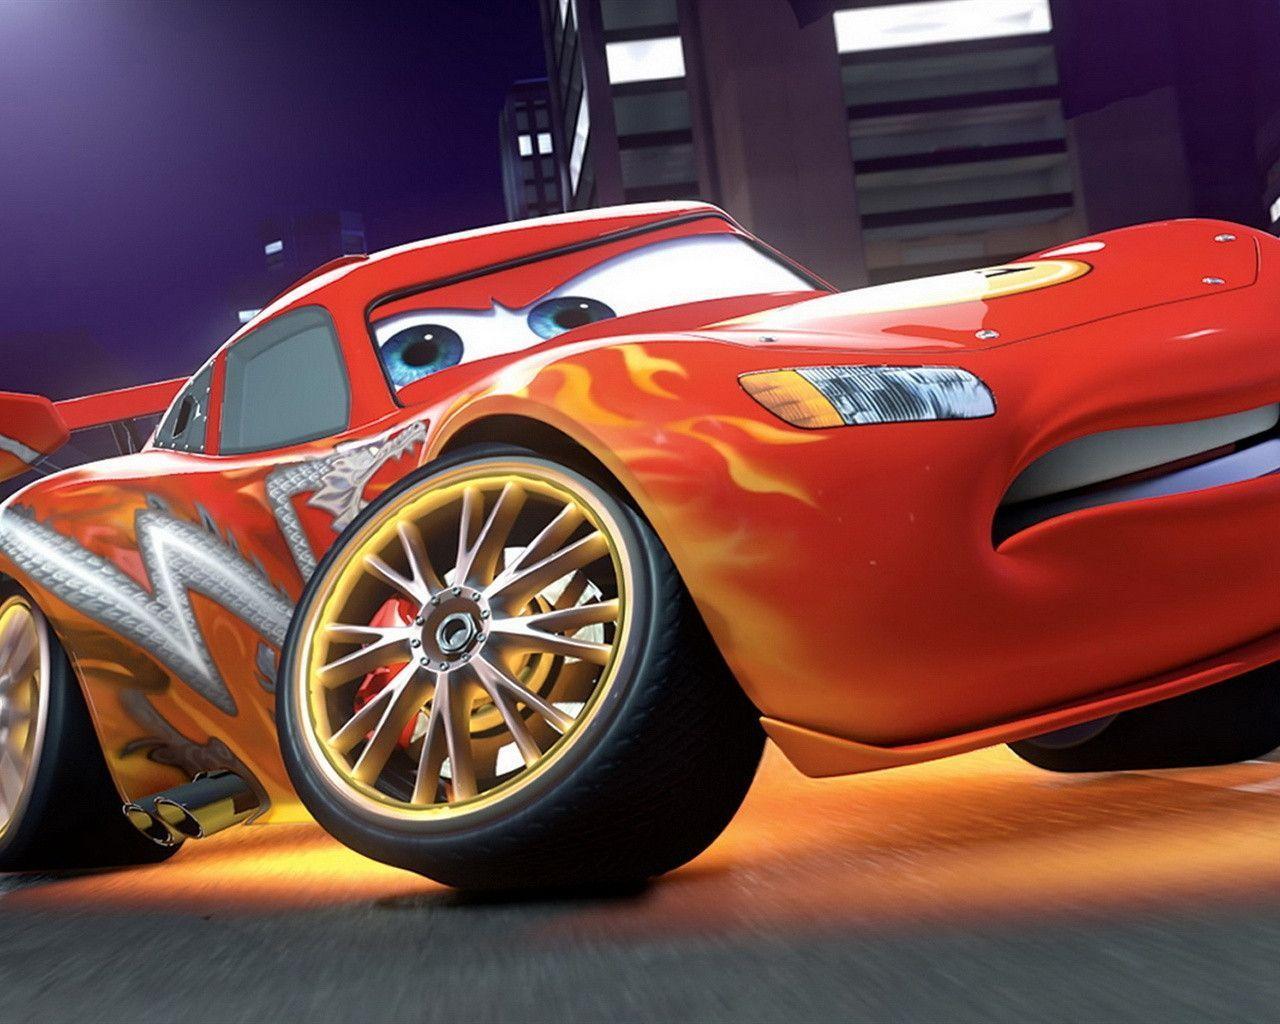 Lightning McQueen in Cars 2 Wallpaperx1024 resolution